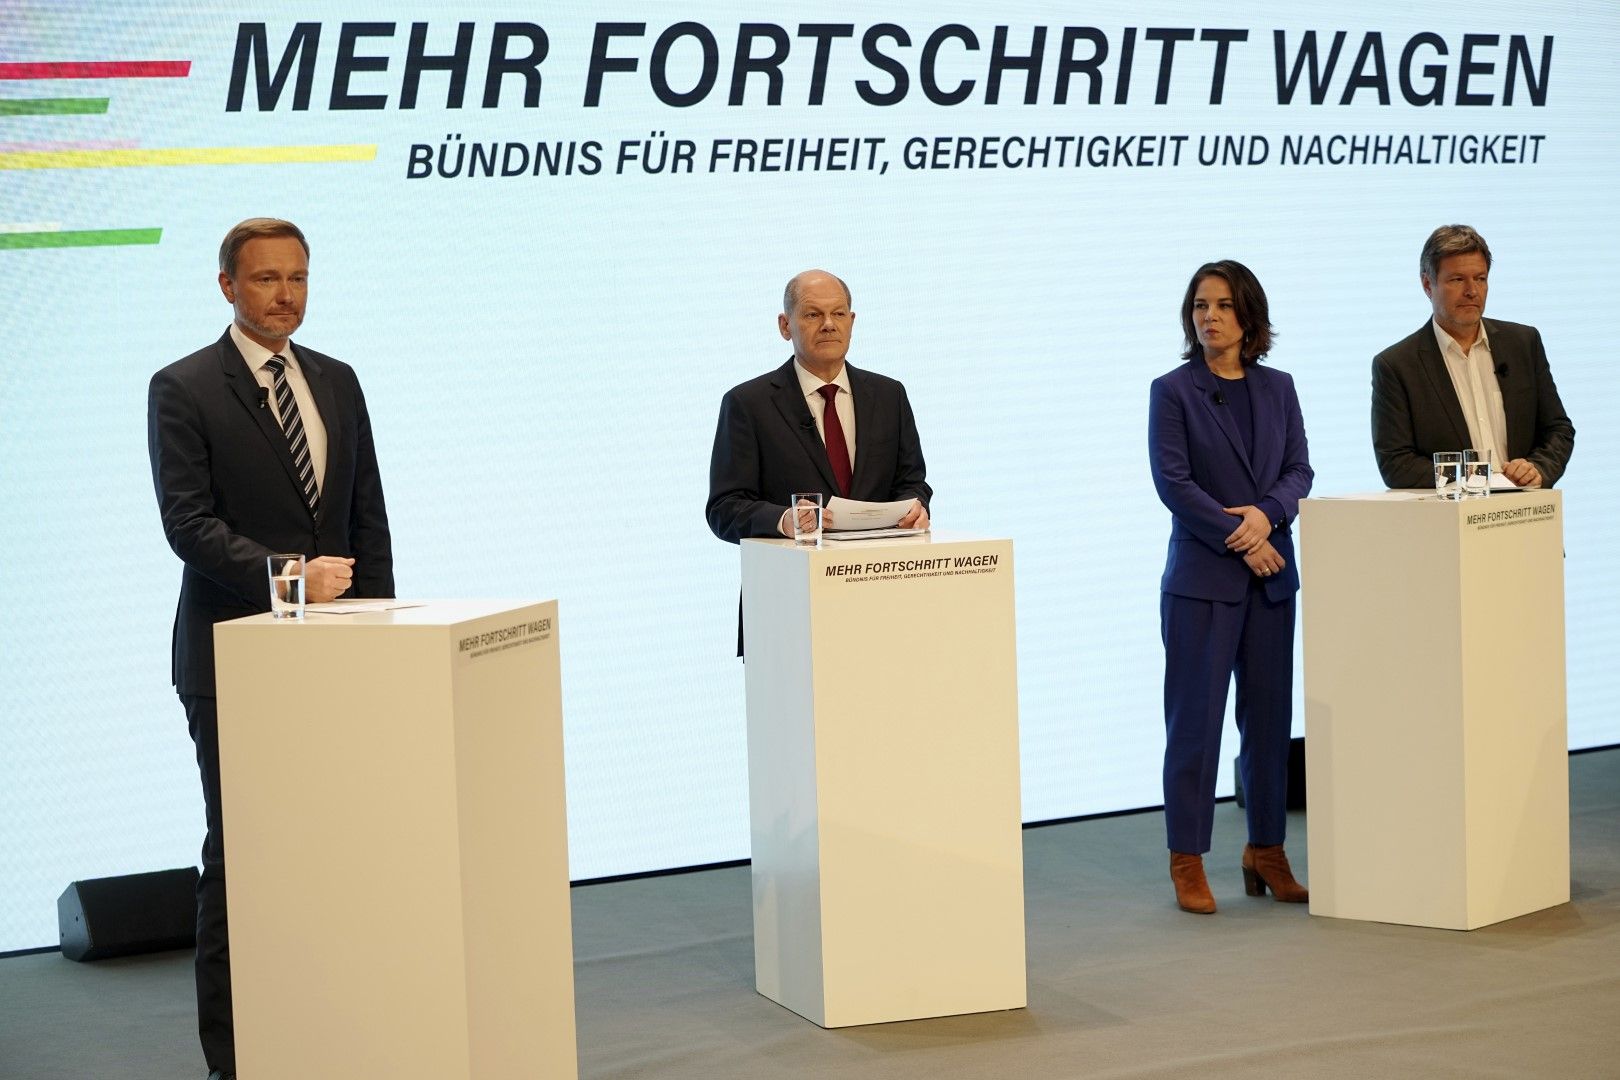 Kандидатът за канцлер Олаф Шолц (ГСДП), втори вляво, заедно  с лидерите на Зелената партия Аналена Бербок, трета отляво, Робърт Хабек, вдясно, и председателят на Свободната демократическа партия Кристиан Линднер, вляво, на съвместна пресконференция в Берл